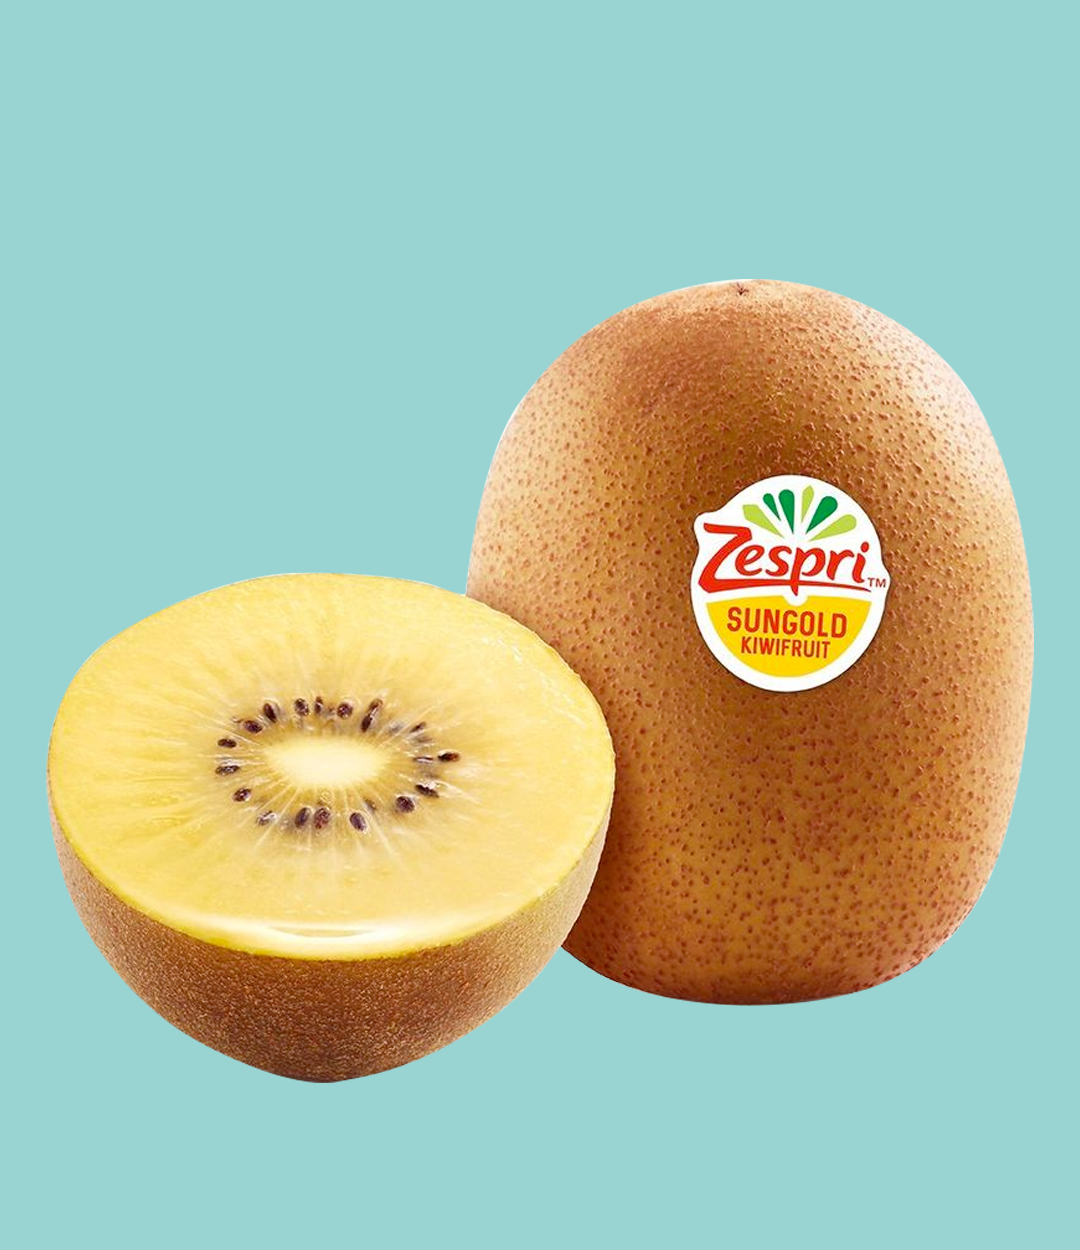 Sungold Kiwifruit